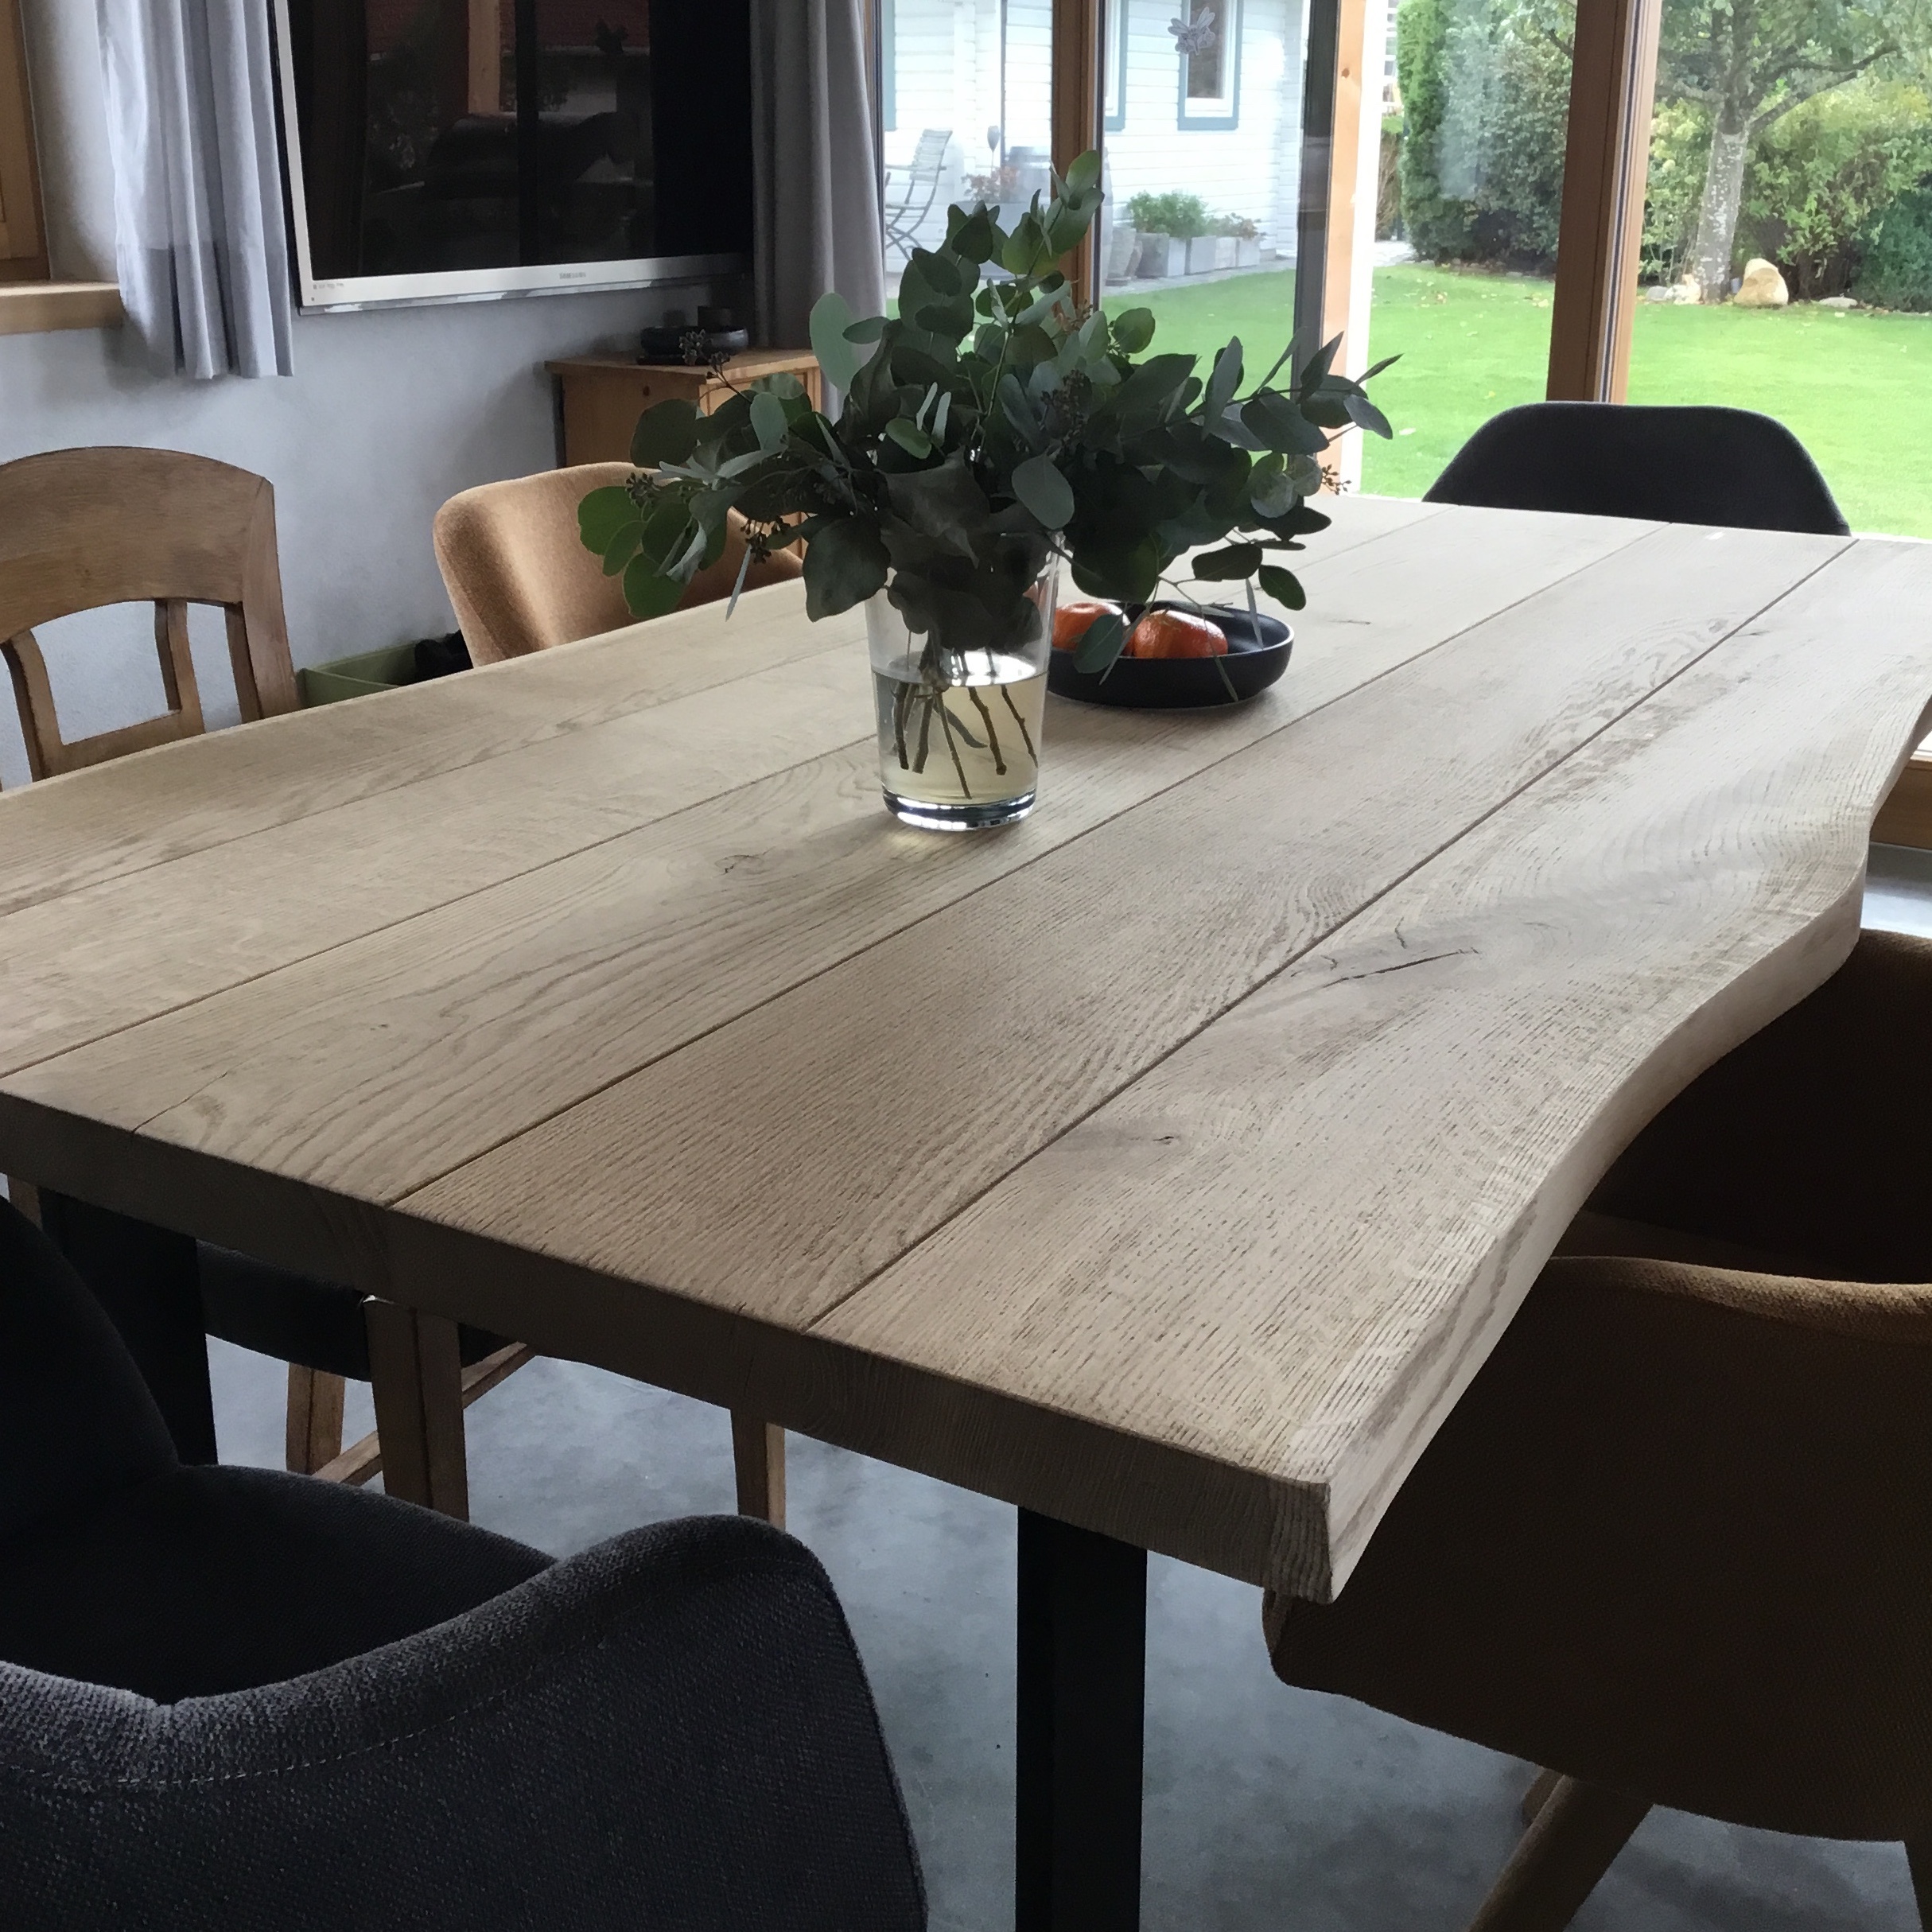  Tischplatte Wildeiche baumkante - 4,5 cm dick - verschiedene Größen - Asteiche (rustikal) - Gebürstet - Eiche Tischplatte mit  natürlichen Baumkant - Verleimt & künstlich getrocknet (HF 8-12%)  - mit V-Fuge